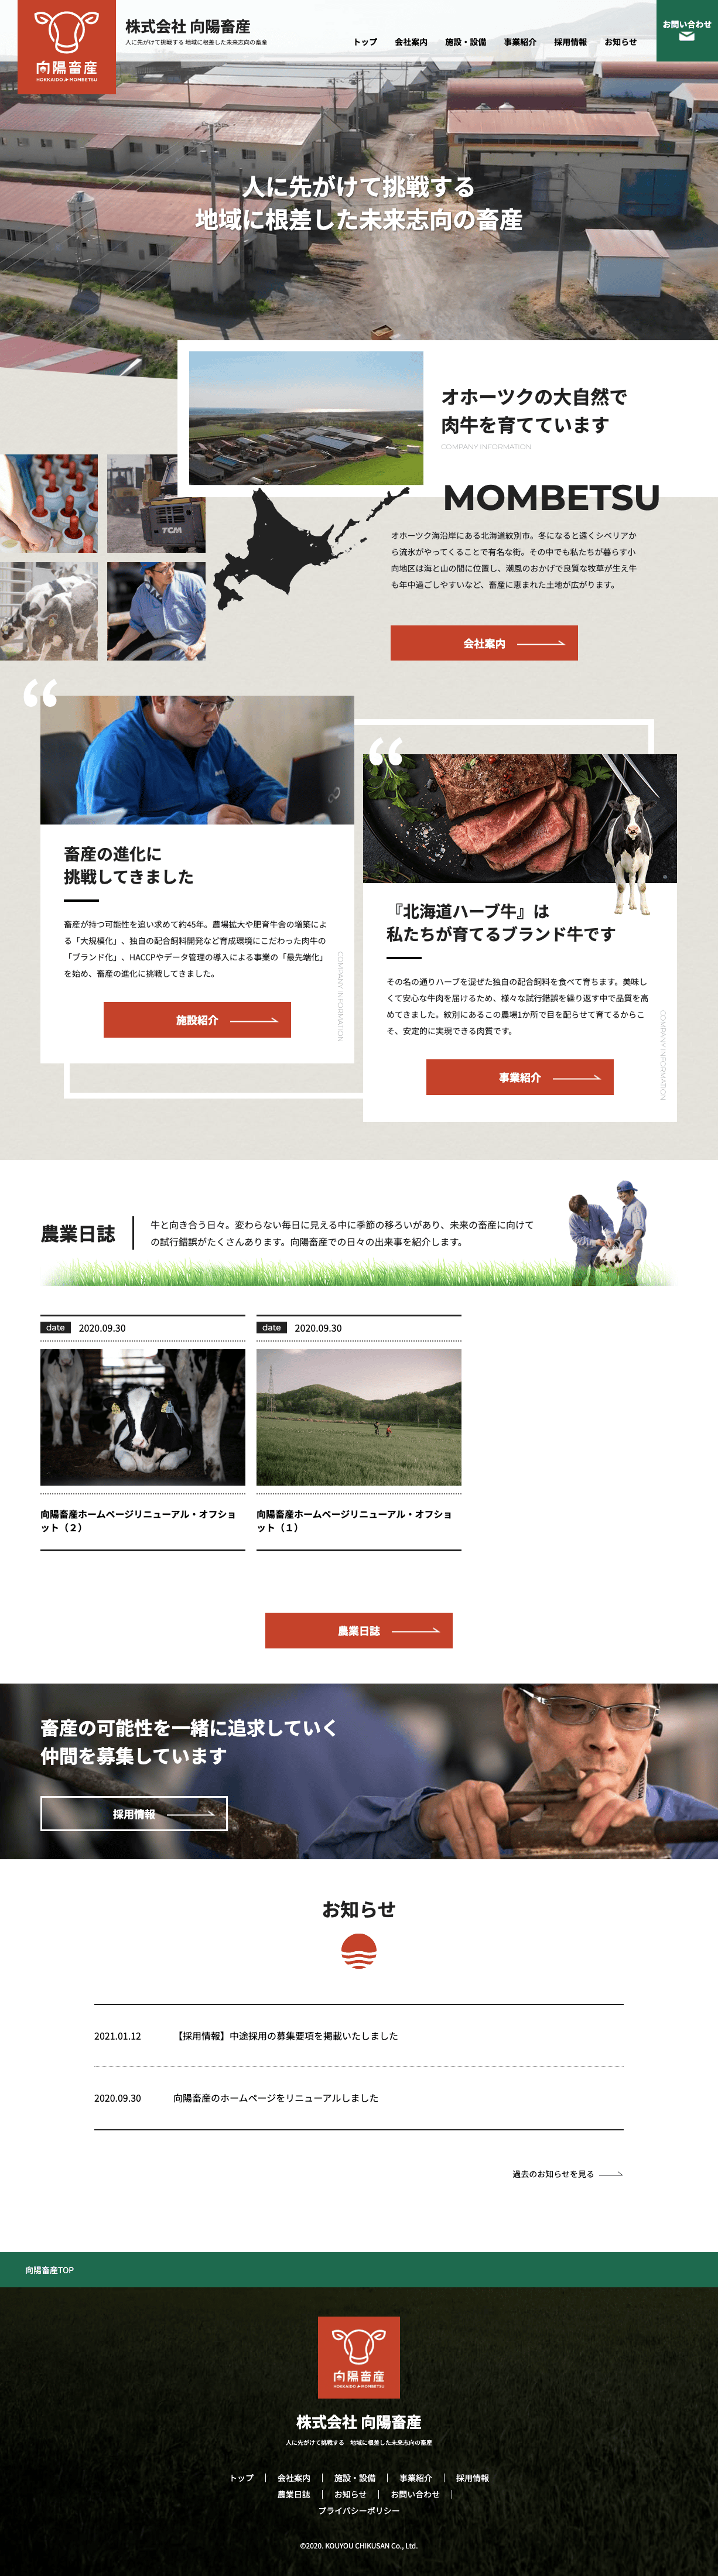 向陽畜産 公式サイトのTOPページデザイン